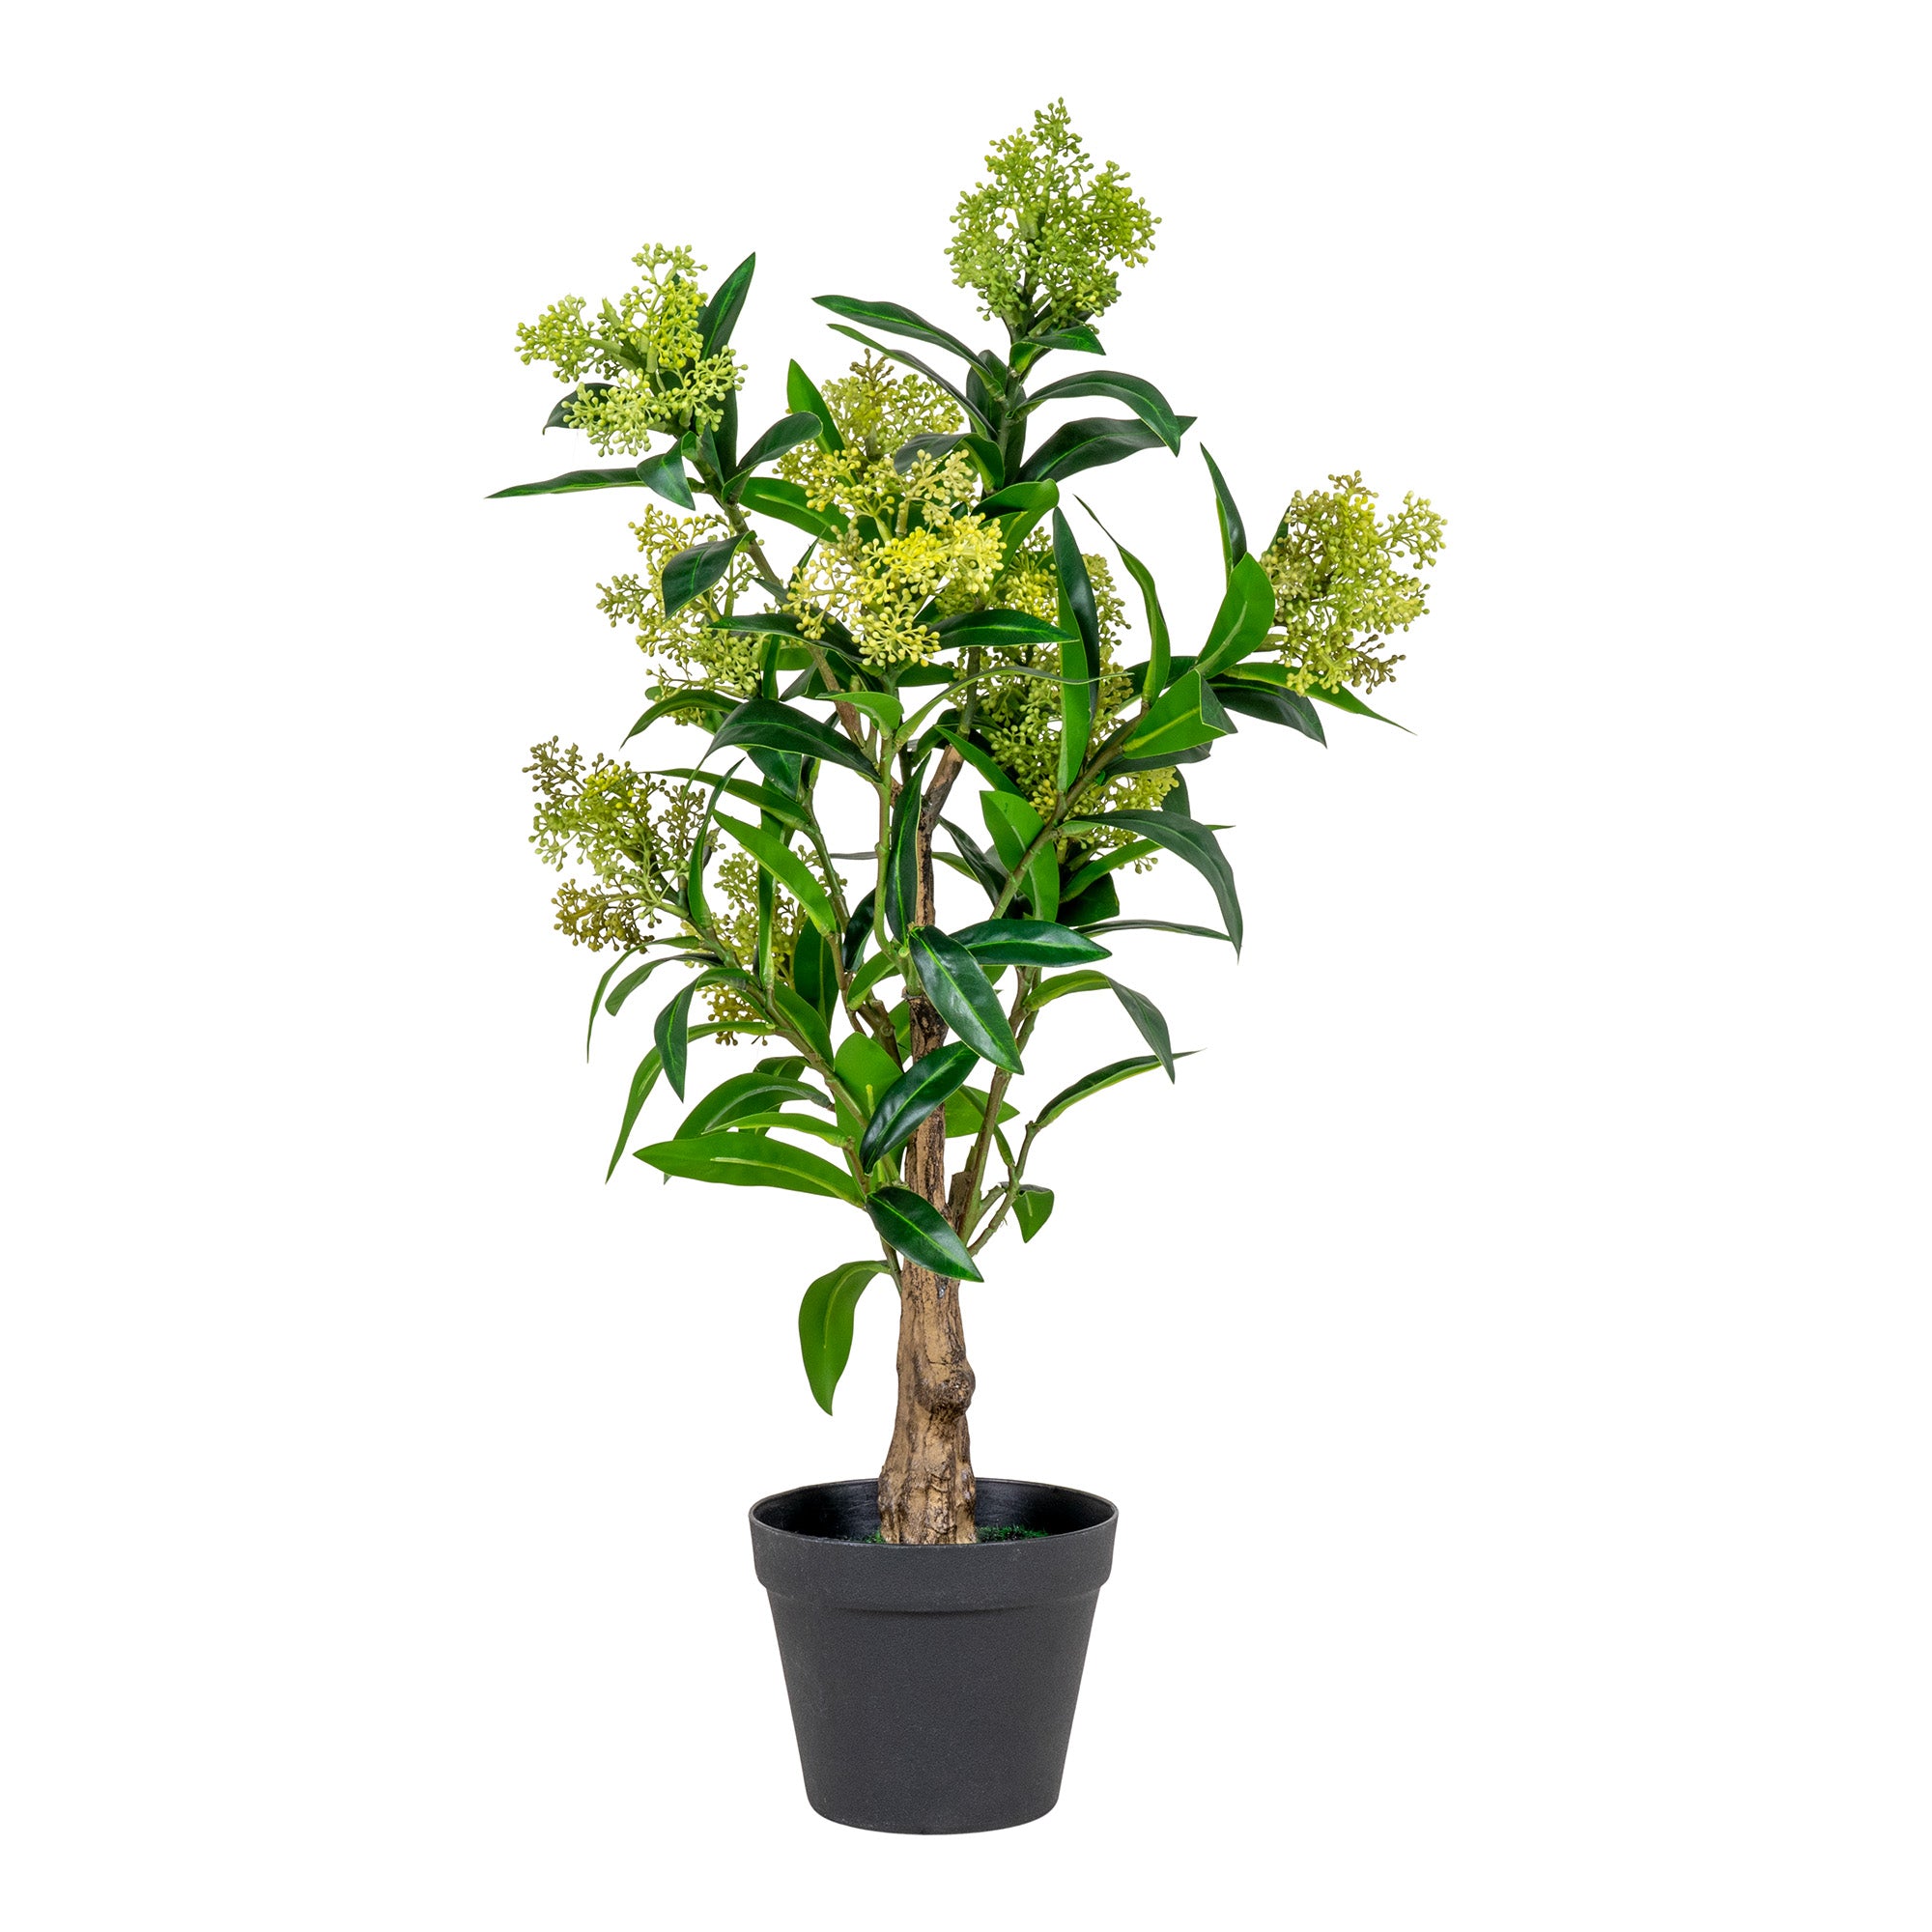 Skimmia Træ  - Kunstig Plante, Grøn H:75 Cm ⎮ 5713917022595 ⎮ 9501120 